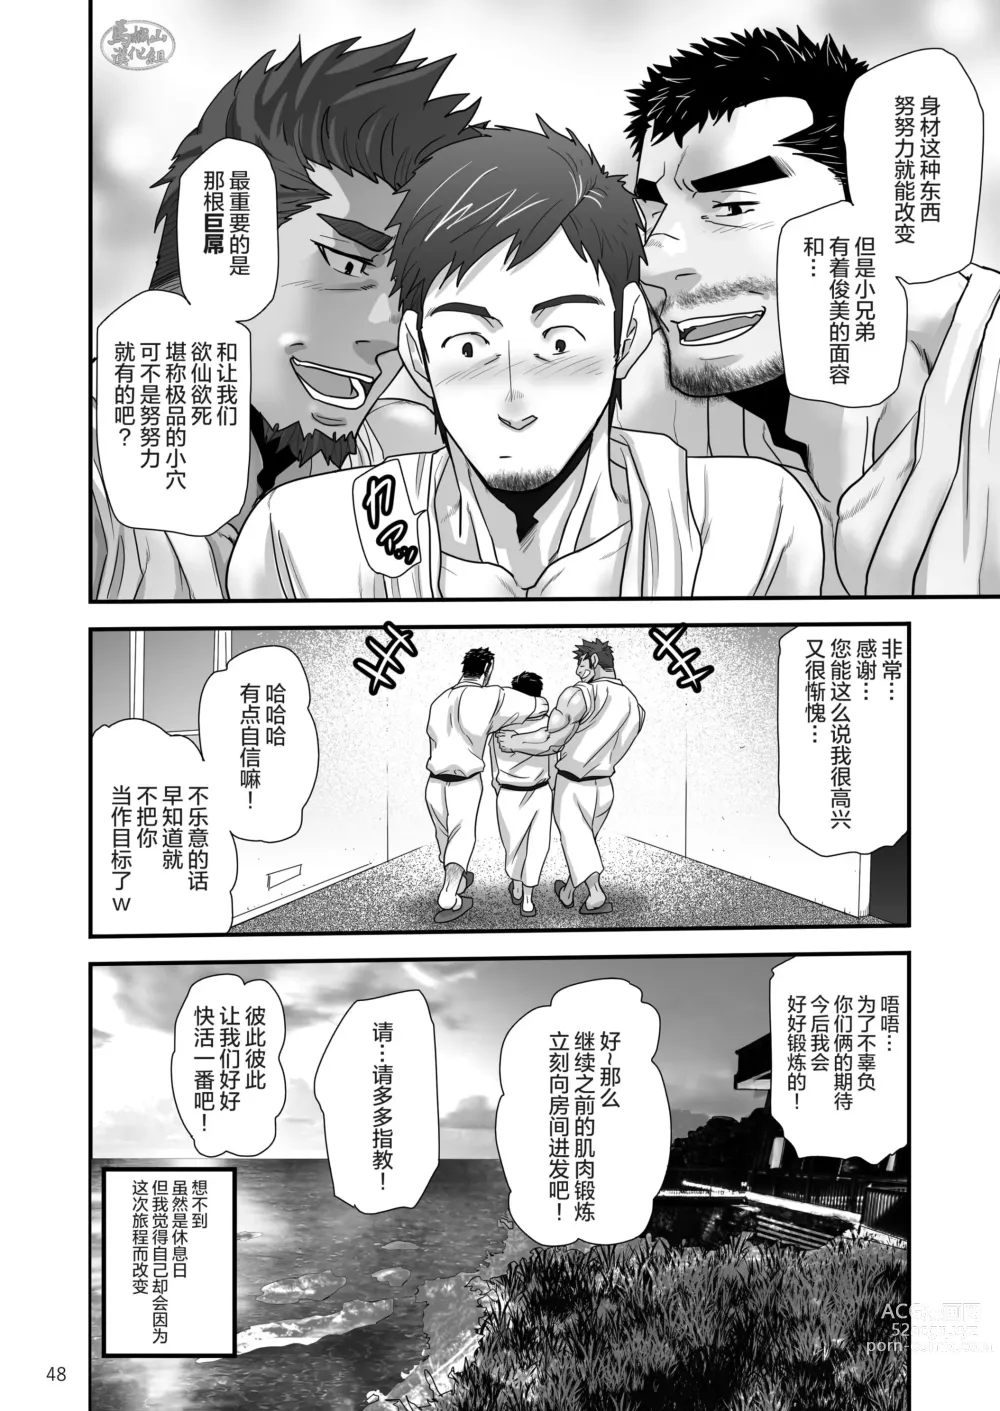 Page 48 of manga 松武互悦同衆!!_旅の恥はヌキすて